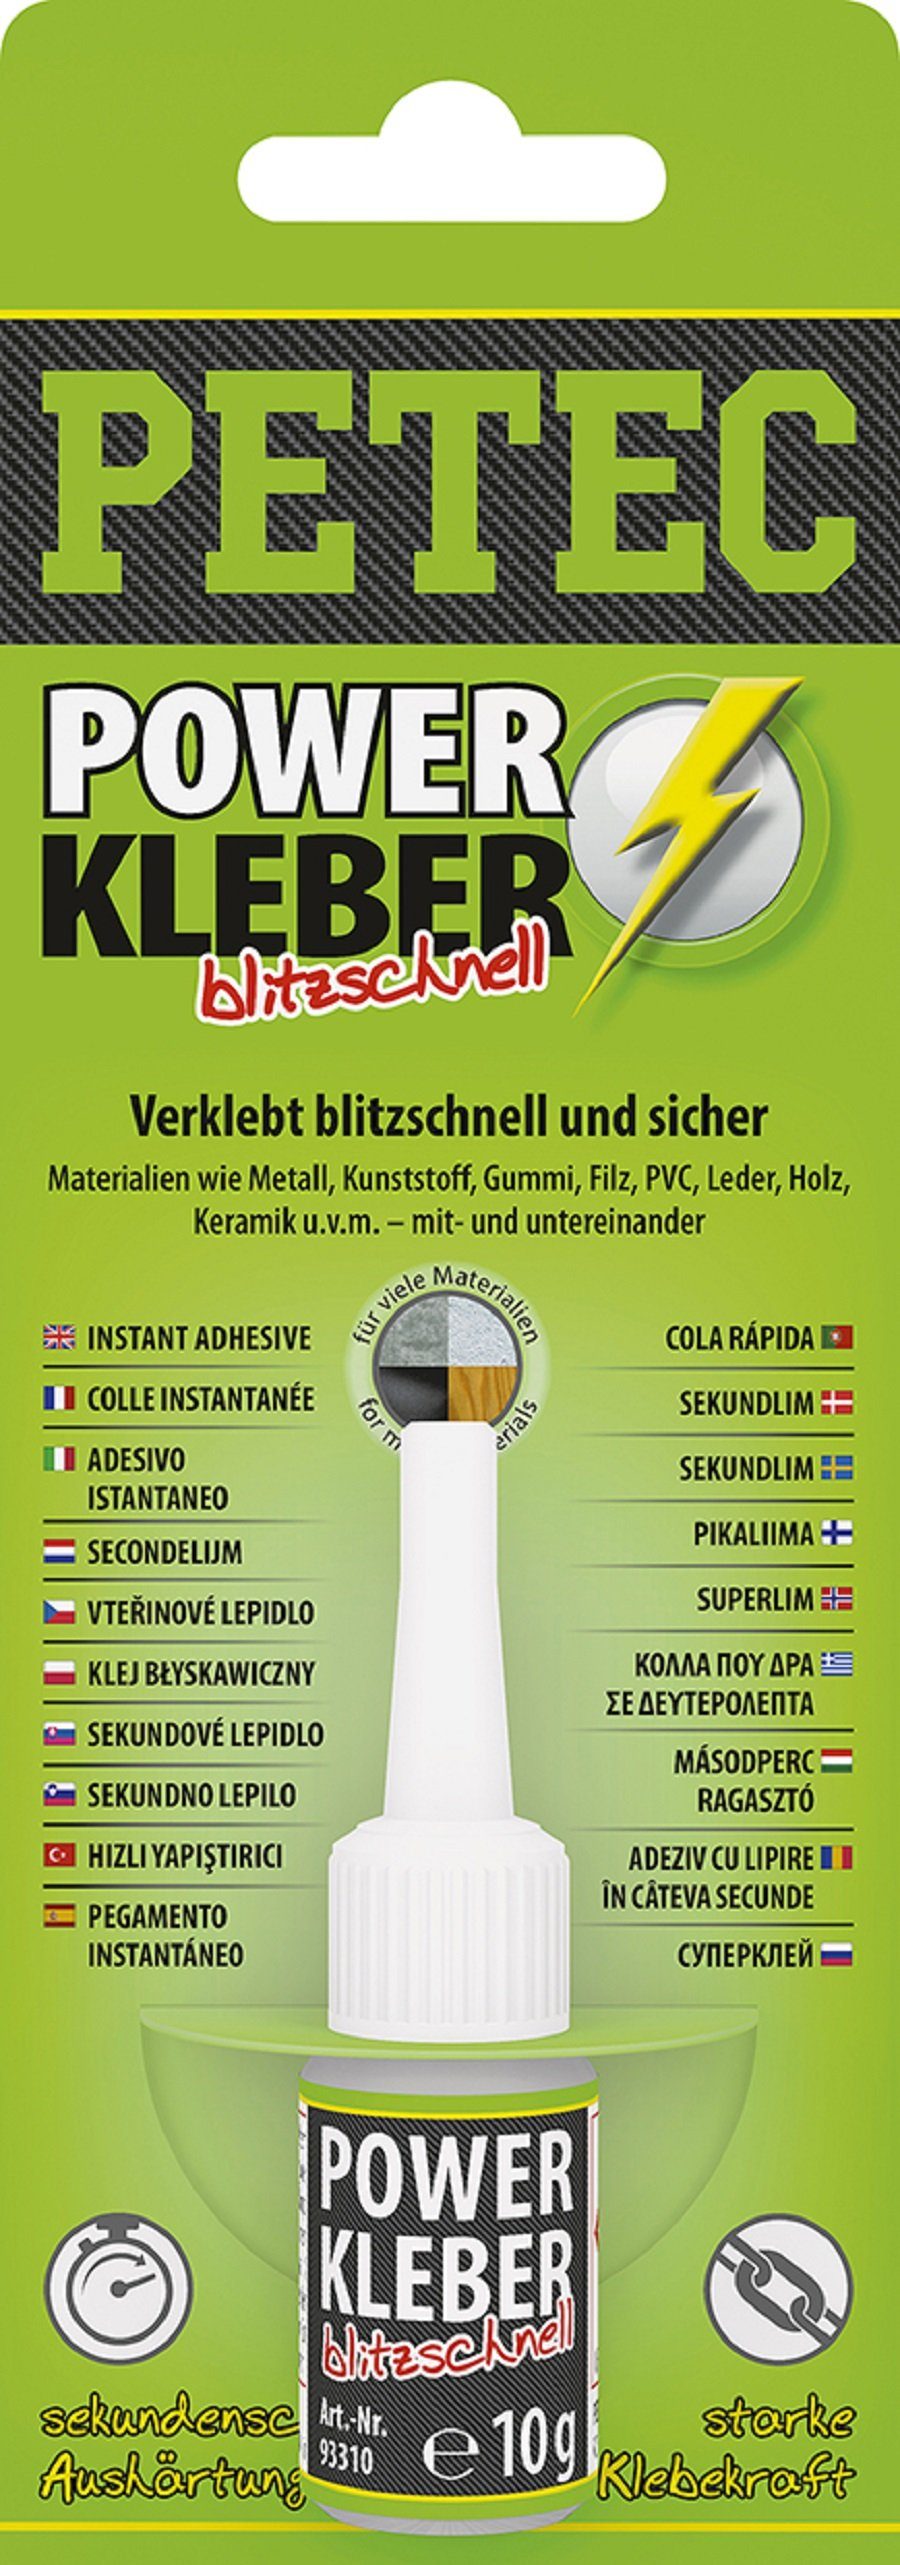 Petec Kleber 10g Kleberspachtel 93410 Petec Blitzschnell Power